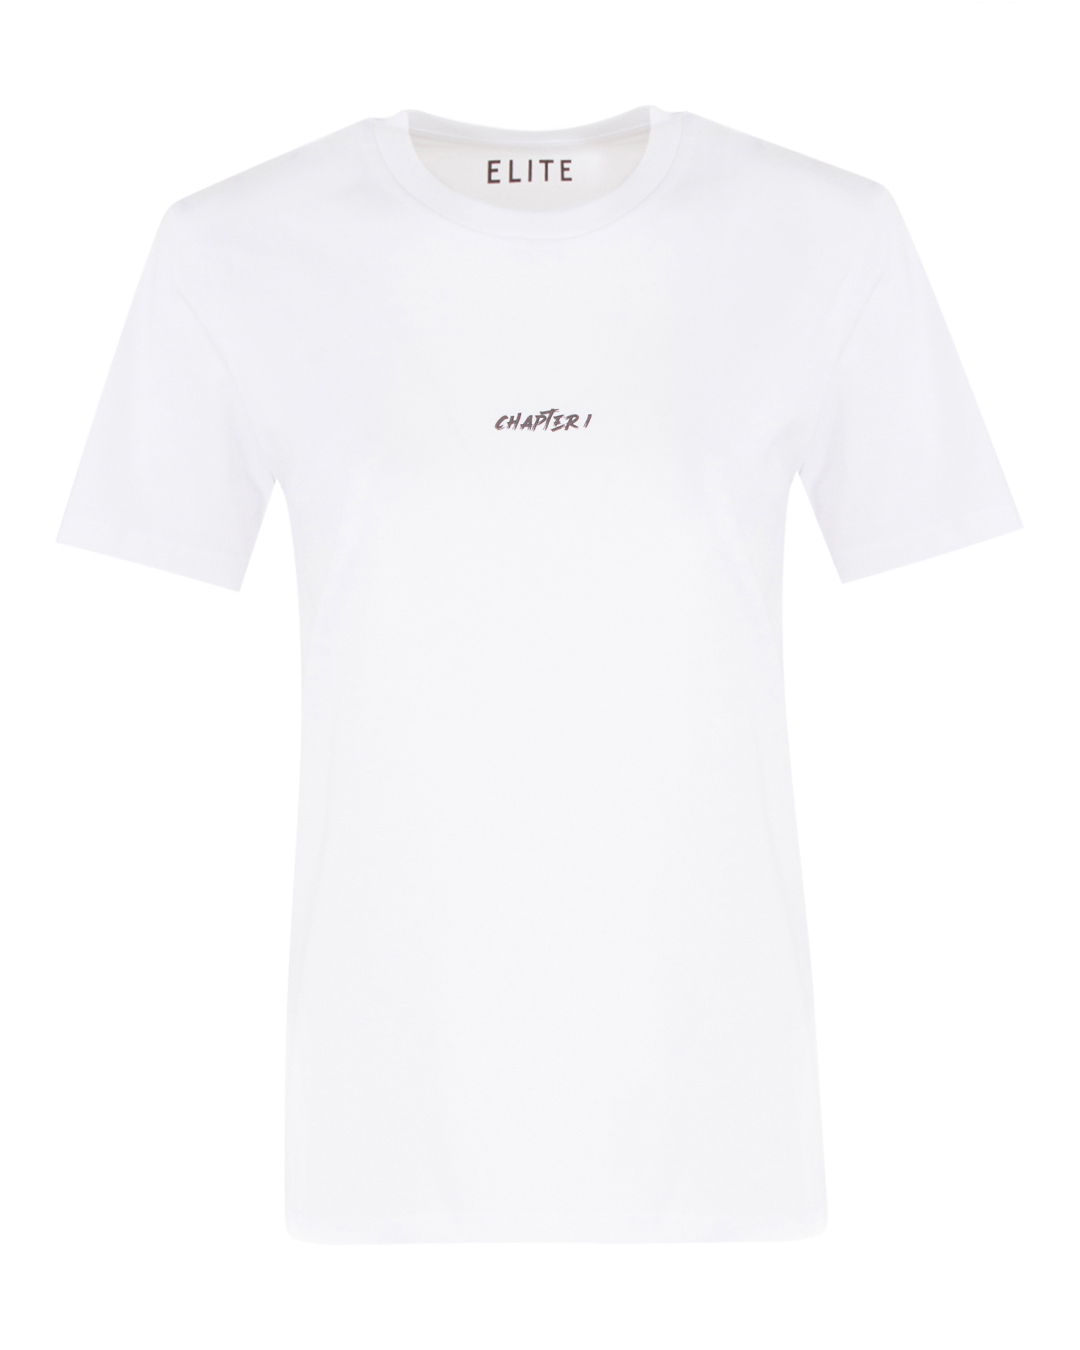 Elite с принтом  артикул UTE 471 CHAPTER 1 марки Elite купить за 12000 руб.